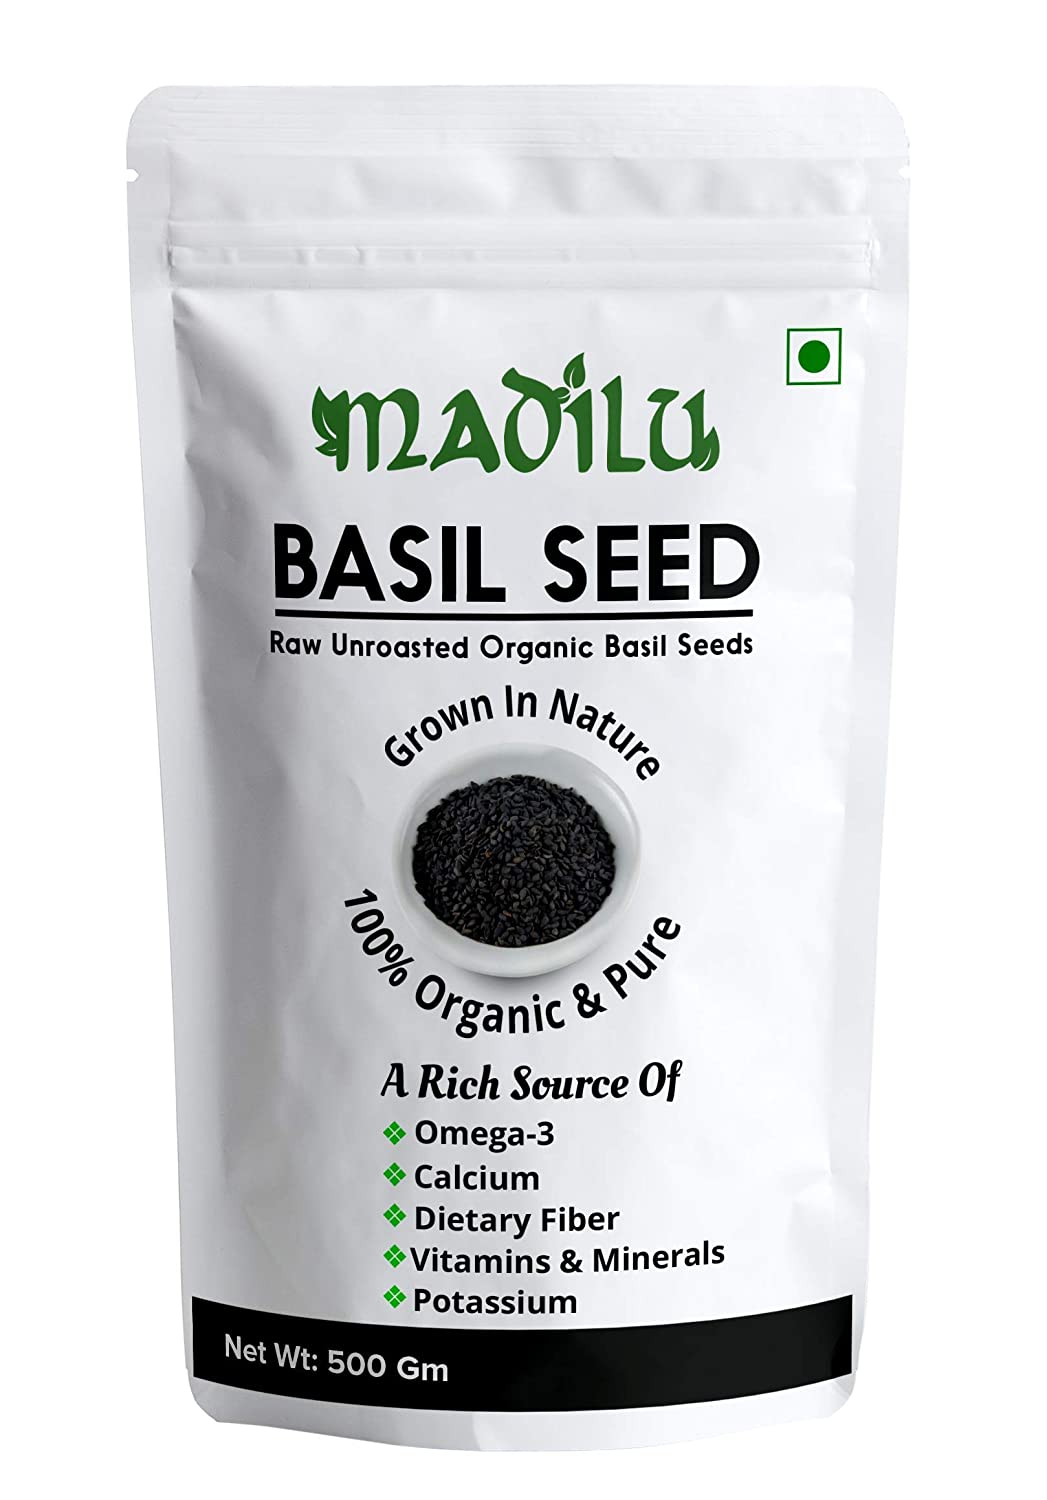 Basil seed 250g